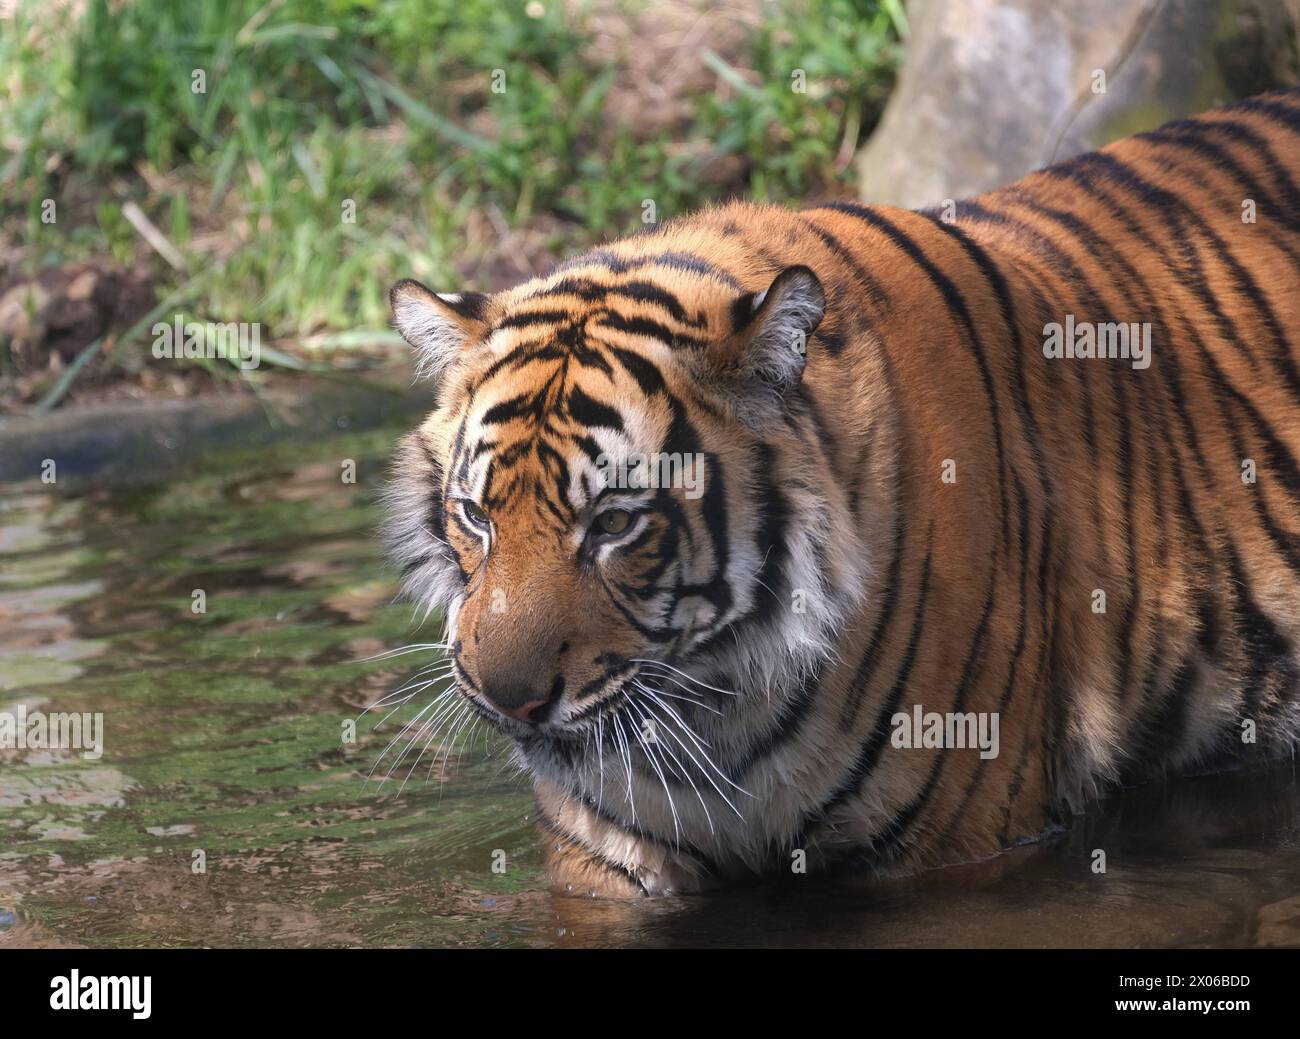 Sumatra-Tiger im Zoo Krefeld in verschiedenen Aktionen. Tiger *** Sumatran tigers at Krefeld Zoo in various tiger activities Stock Photo